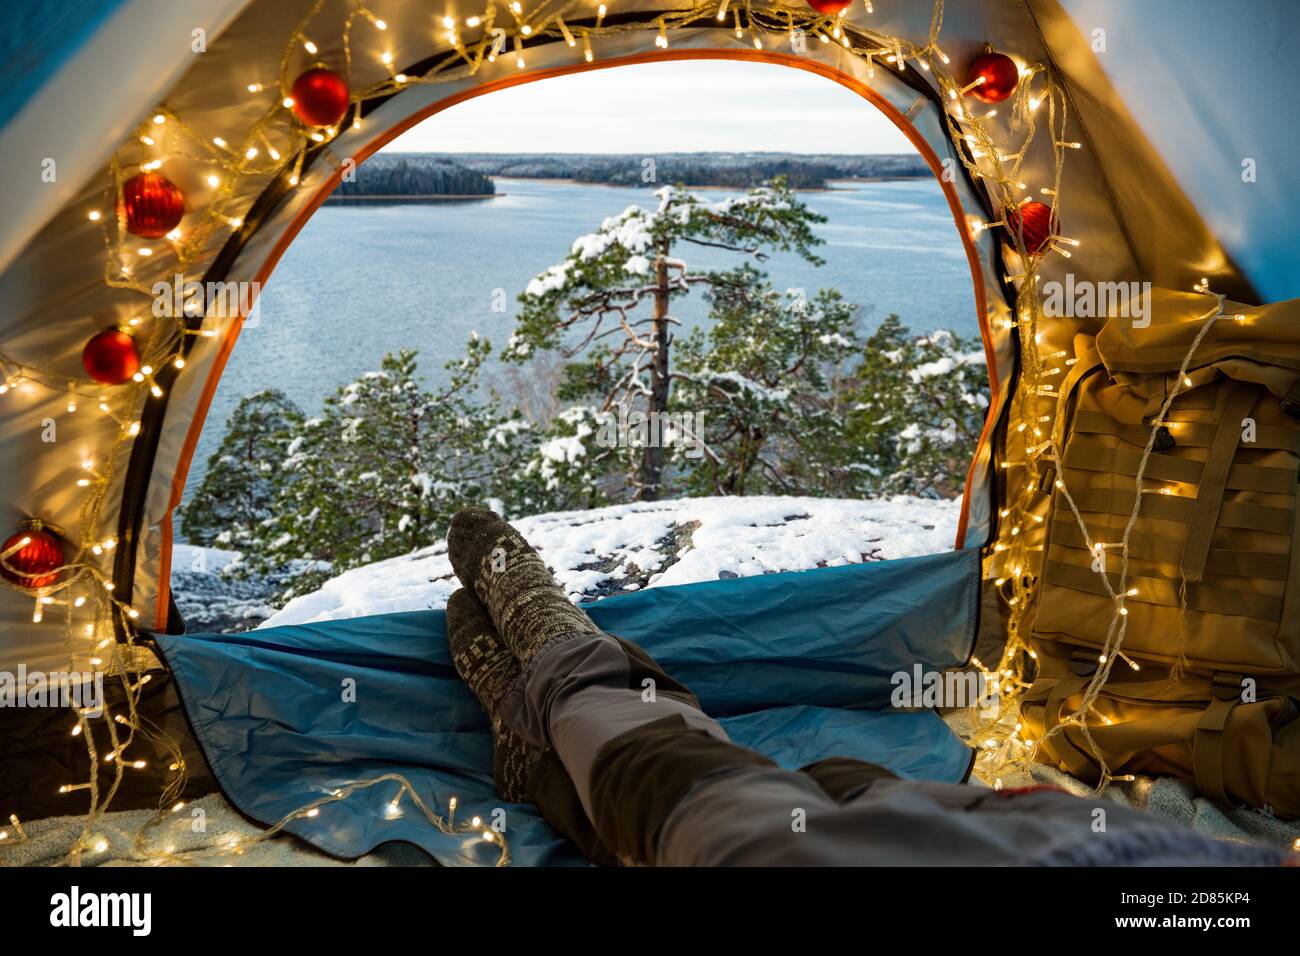 Un homme allongé dans une tente décorée de lumières de Noël portant du bois chaud. Belle forêt sauvage d'hiver couverte de neige. Auto-isolation Banque D'Images